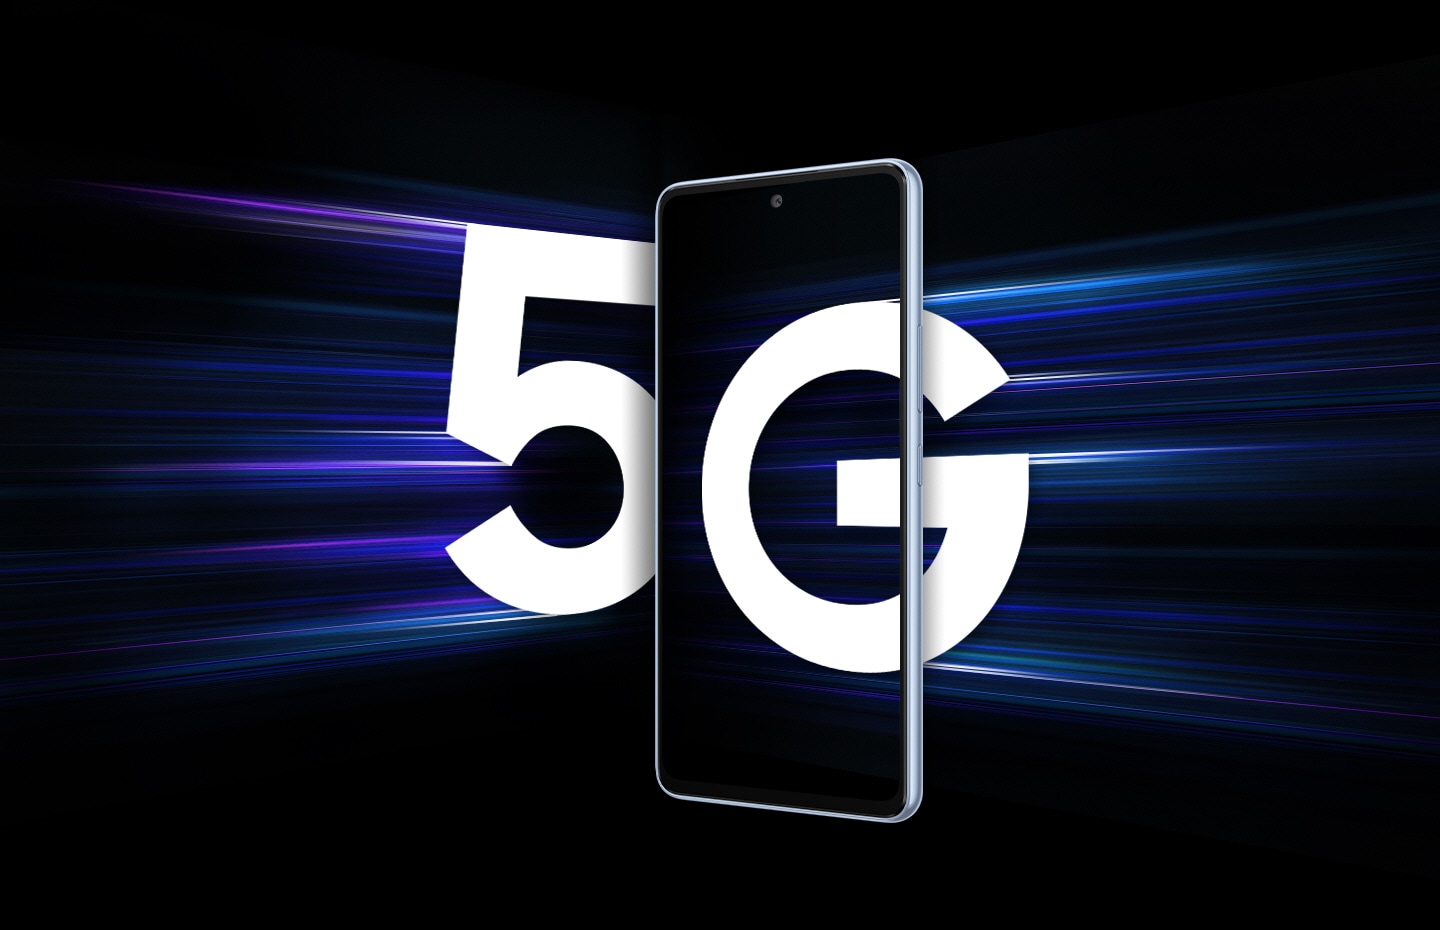 Galaxy A53 5G prikazan sprijeda na crnoj pozadini. S lijeve stane veliki bijeli broj 5 približava se pametnom telefonu s prugama svjetlosti koji prate broj kako bi se prikazalo da se približava velikom brzinom. S desne strane veliko bijelo slovo G djelomično je ušlo u zaslon pametnog telefona. 